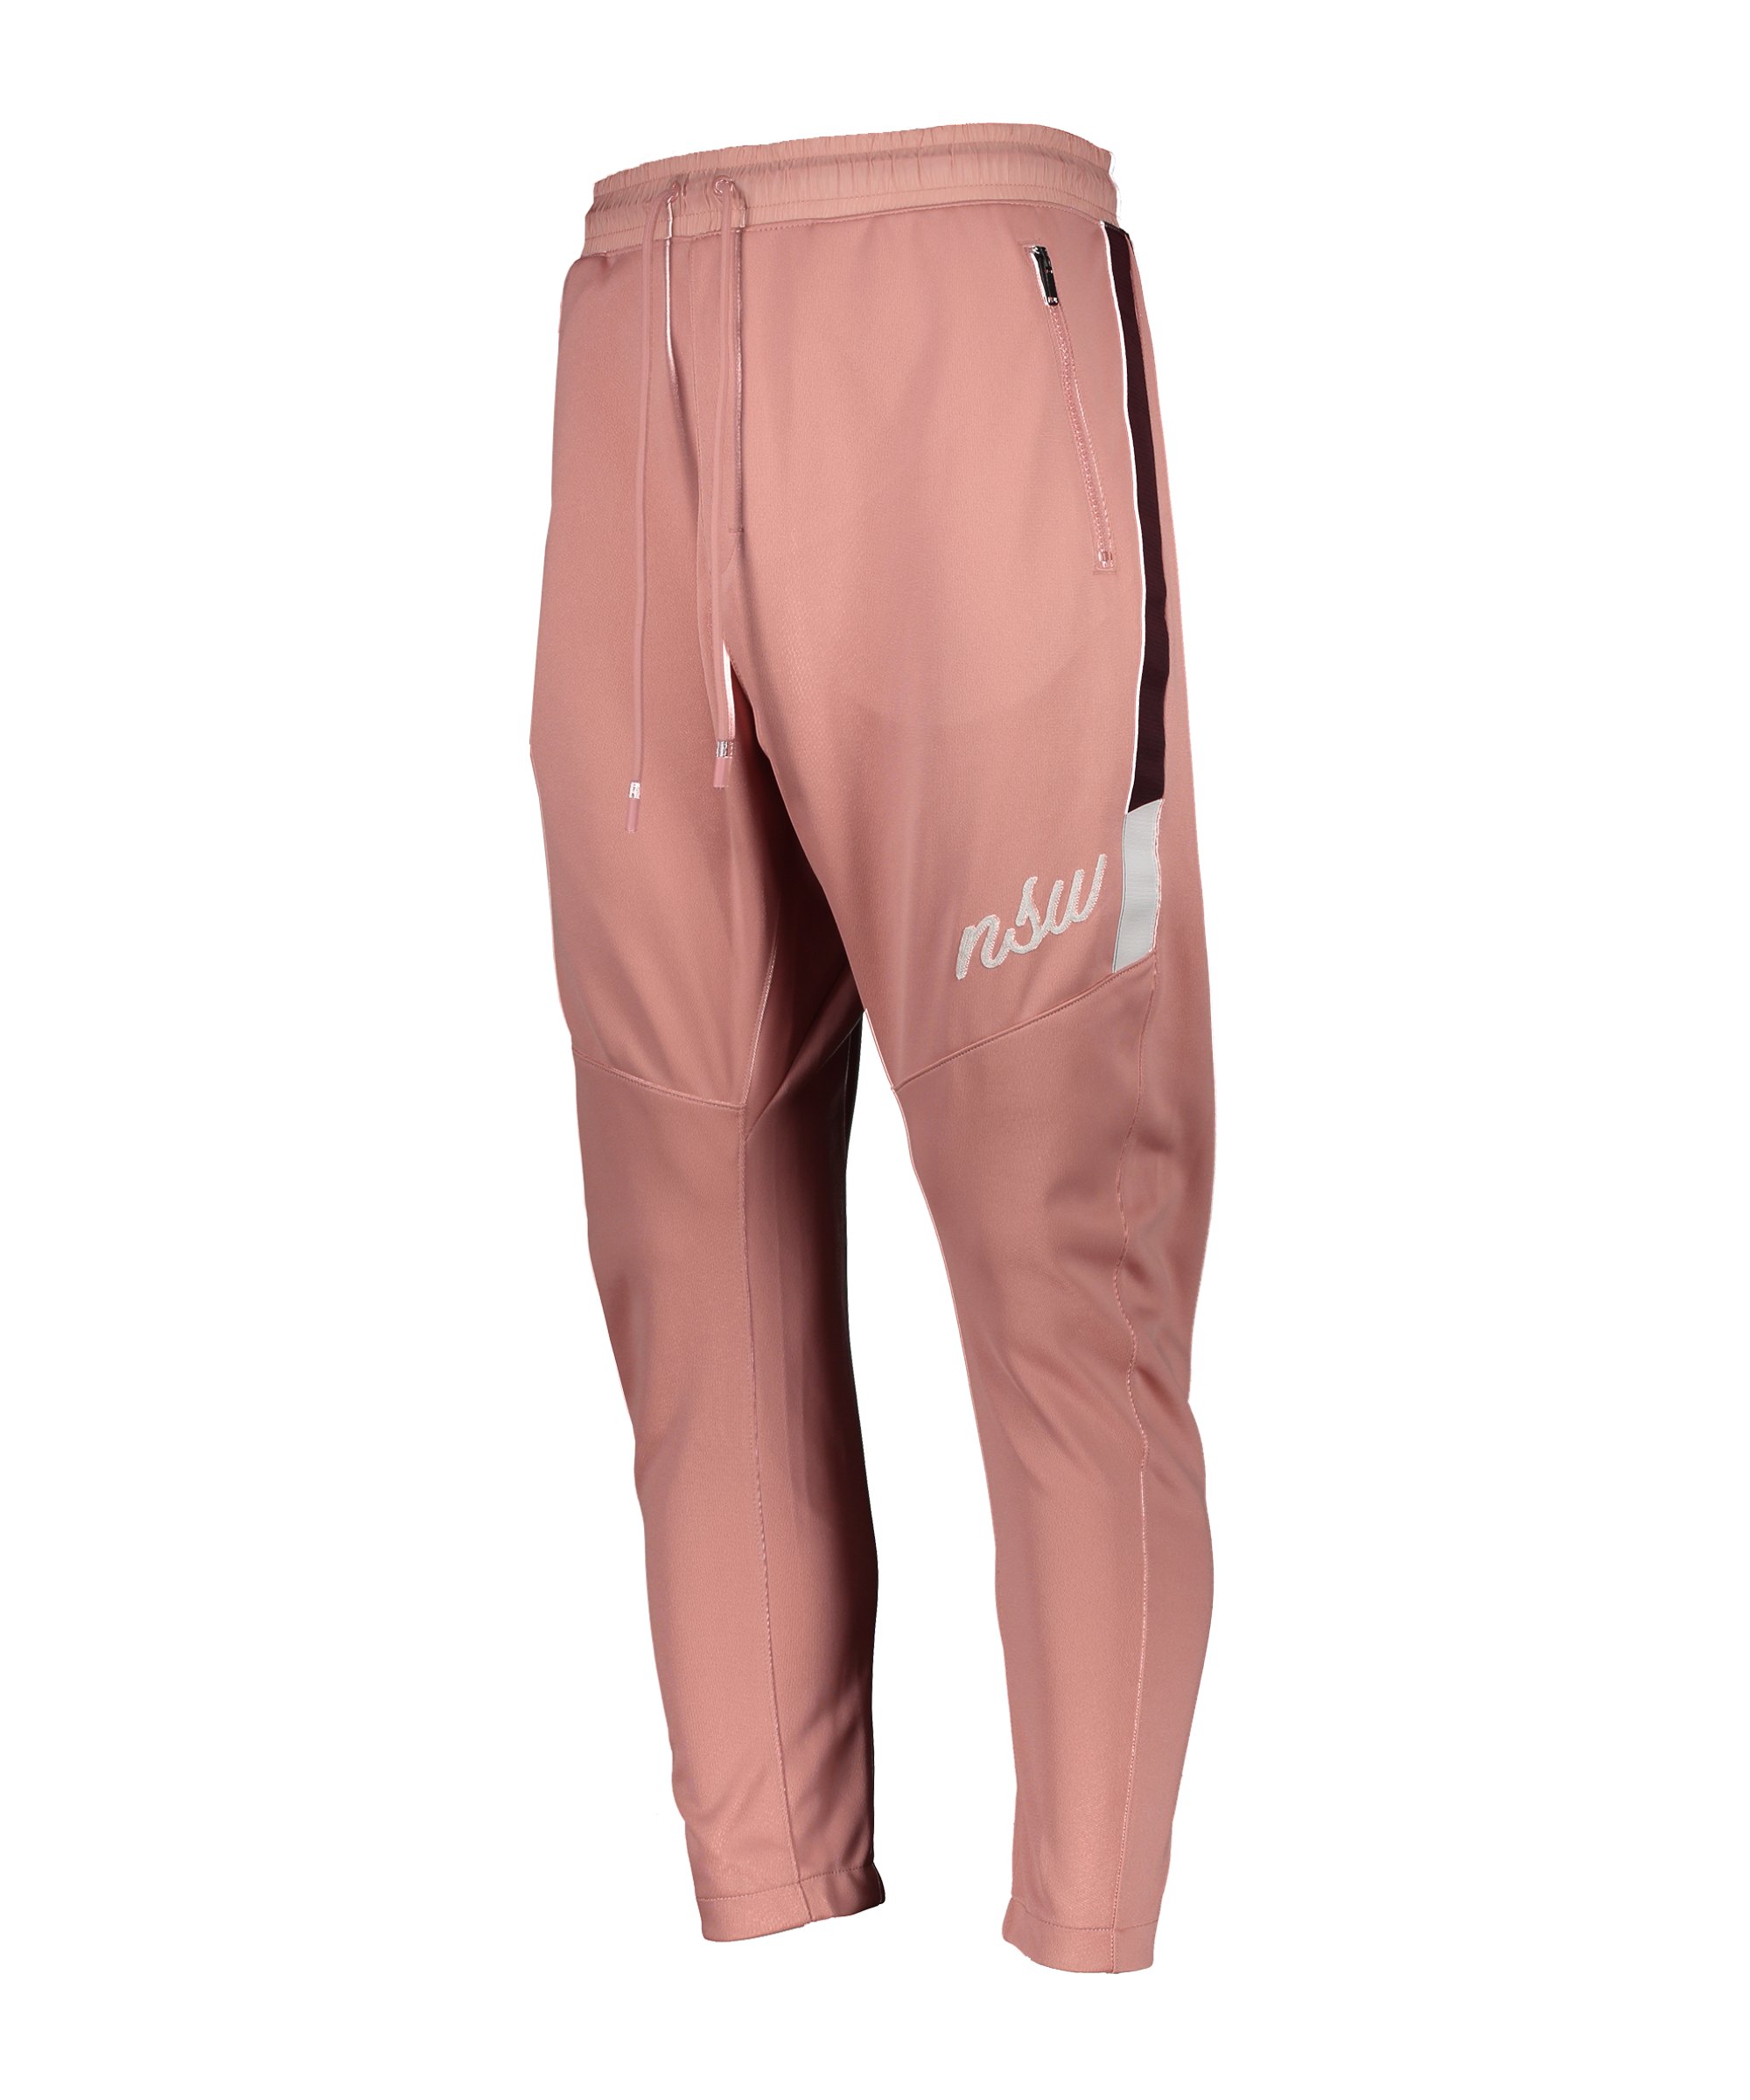 Nike Jogginghose Pant Rosa F685 - rosa